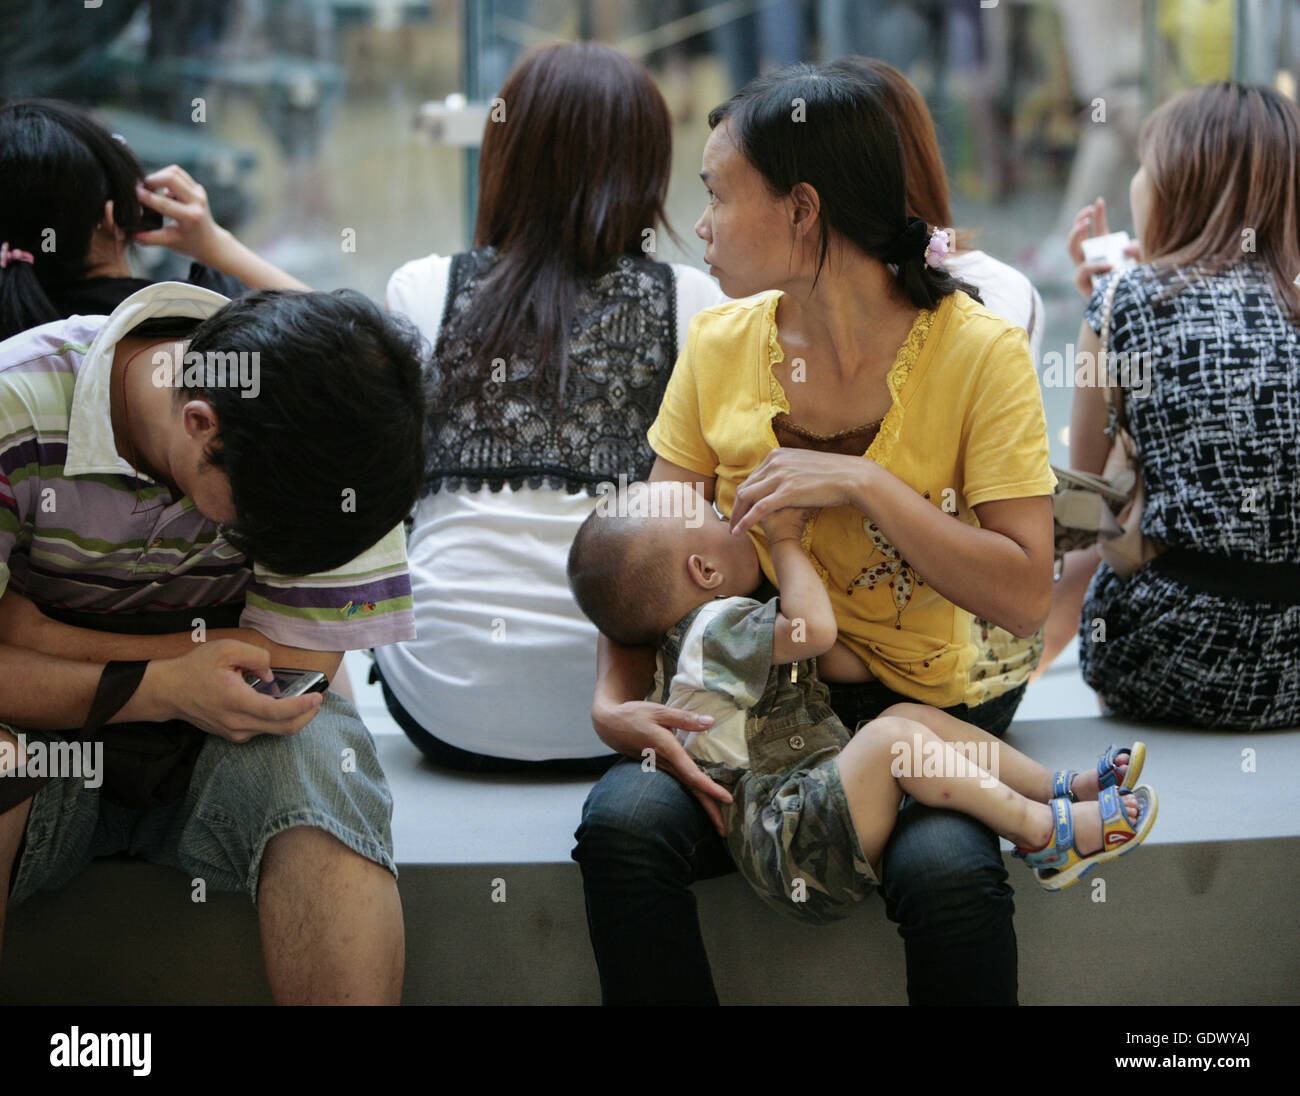 https://c8.alamy.com/comp/GDWYAJ/a-woman-breastfeeding-a-kid-in-a-mall-GDWYAJ.jpg